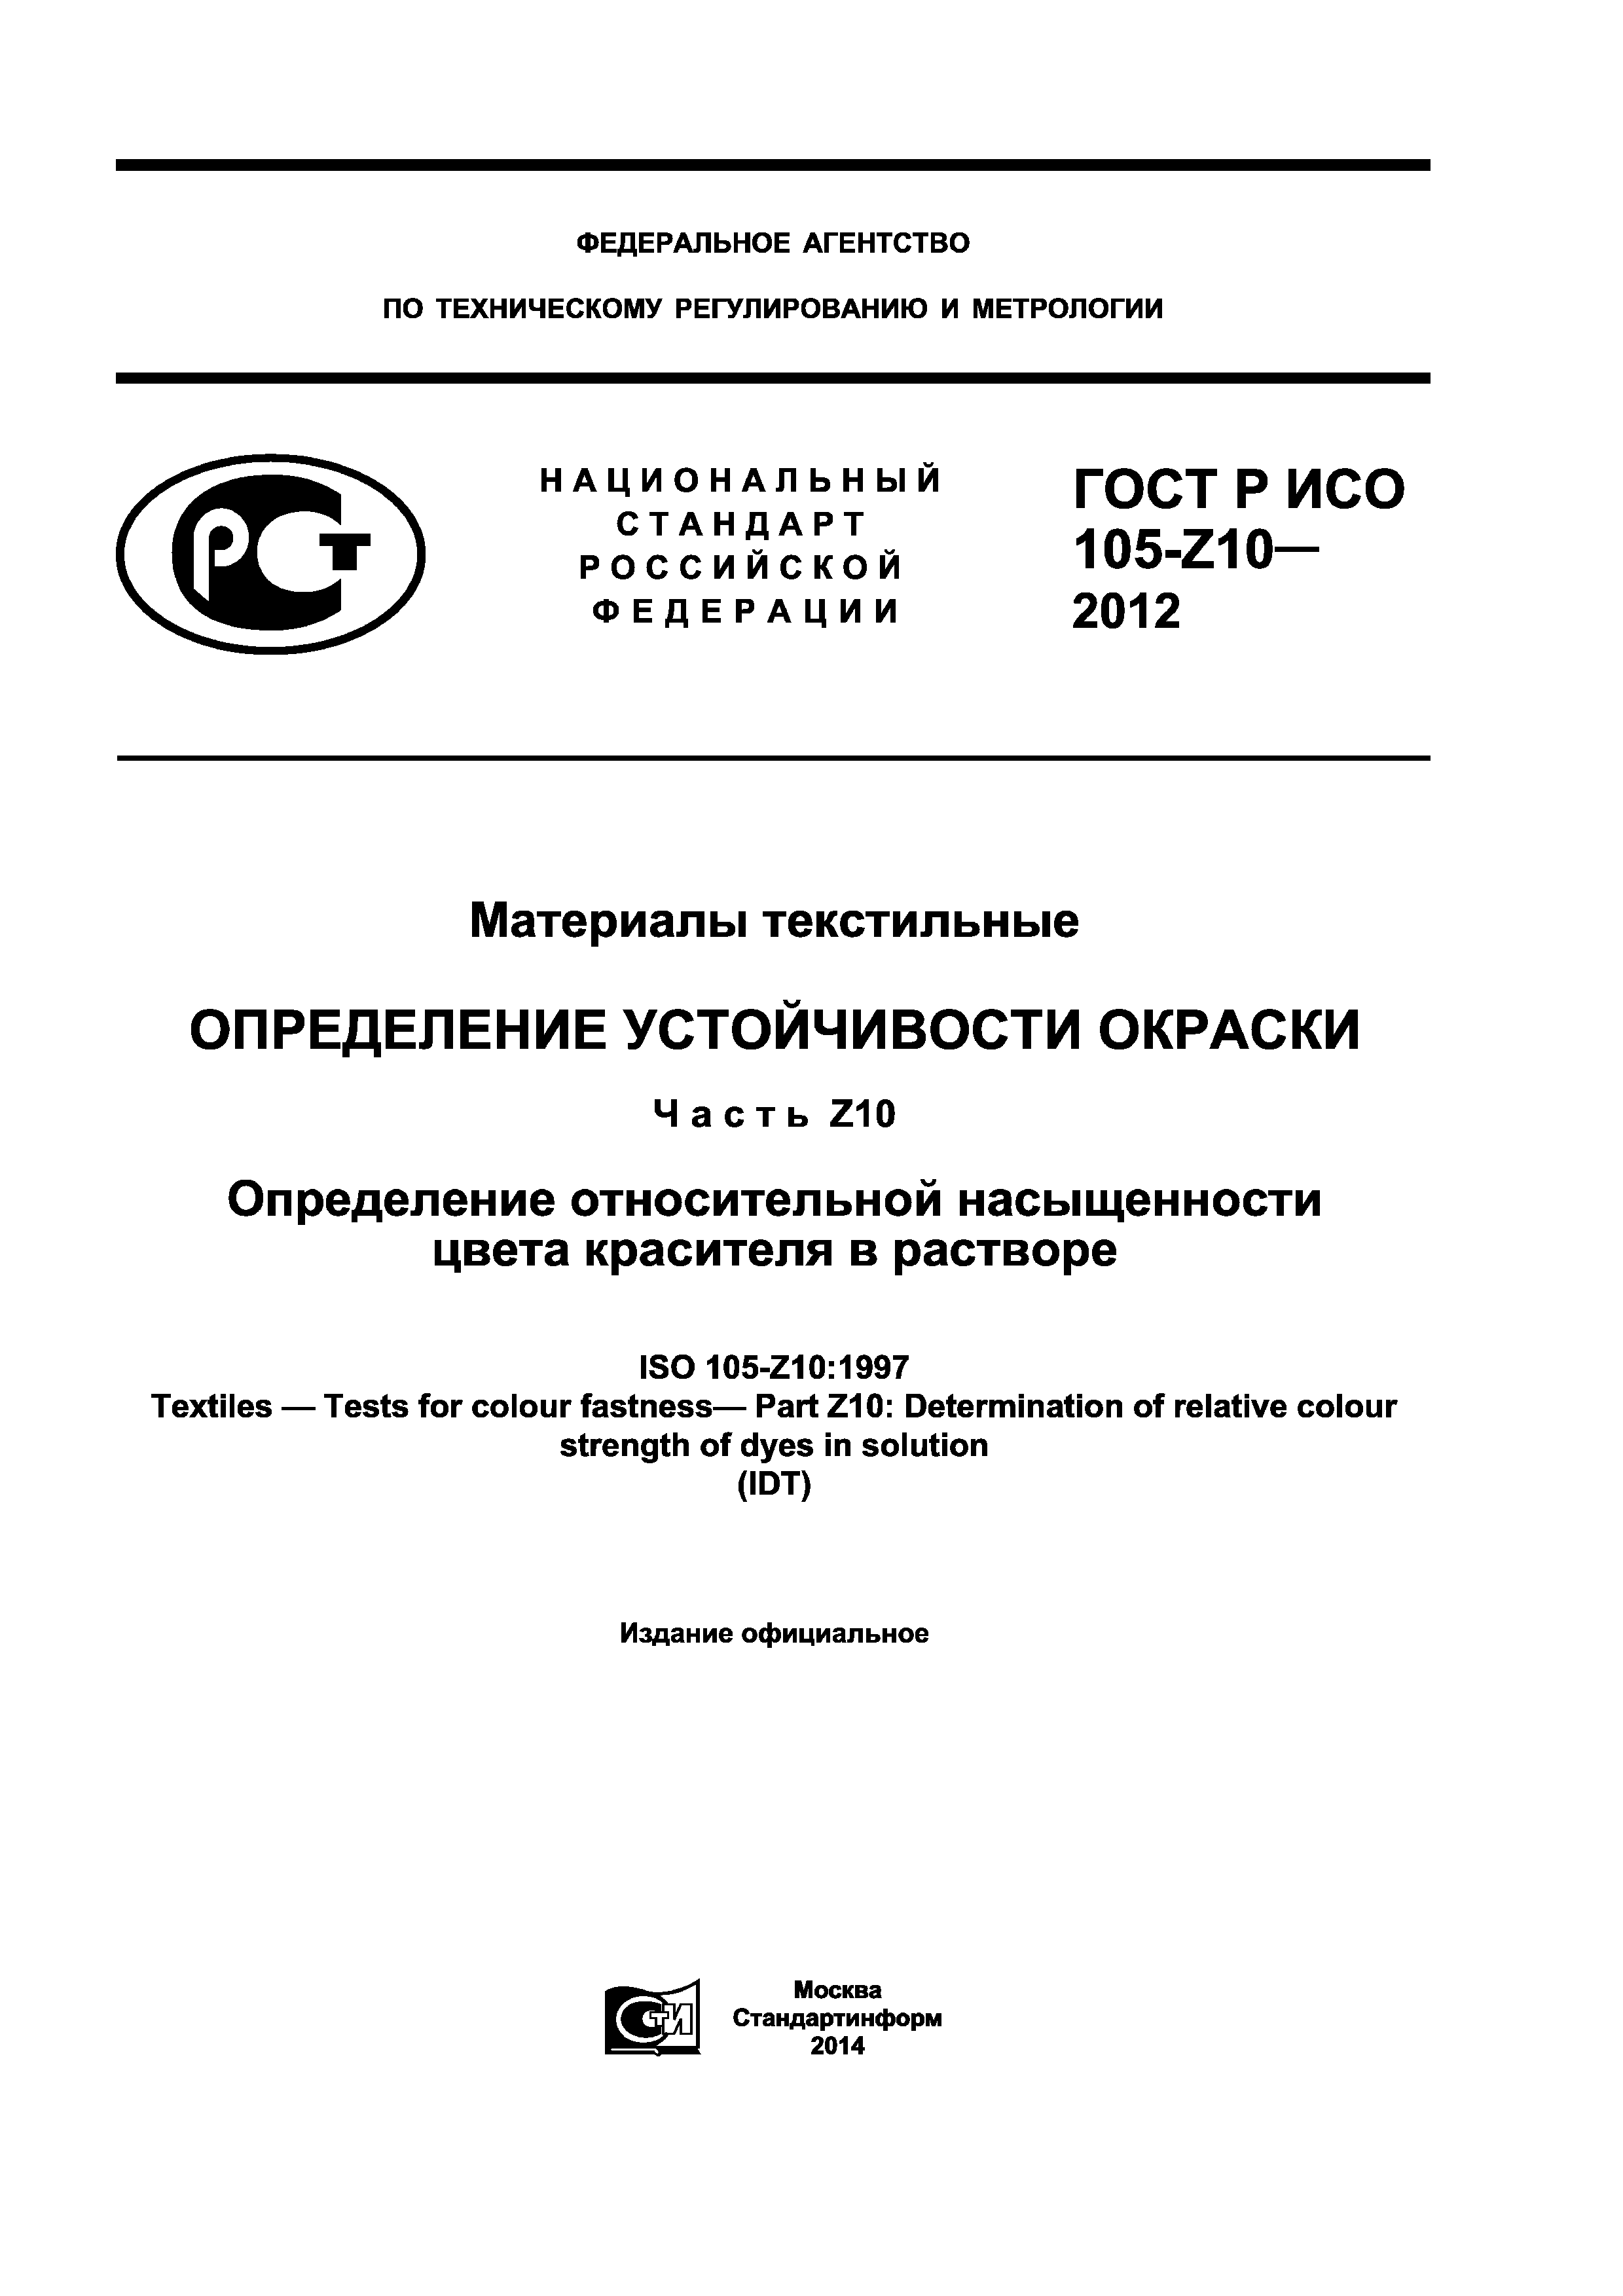 ГОСТ Р ИСО 105-Z10-2012